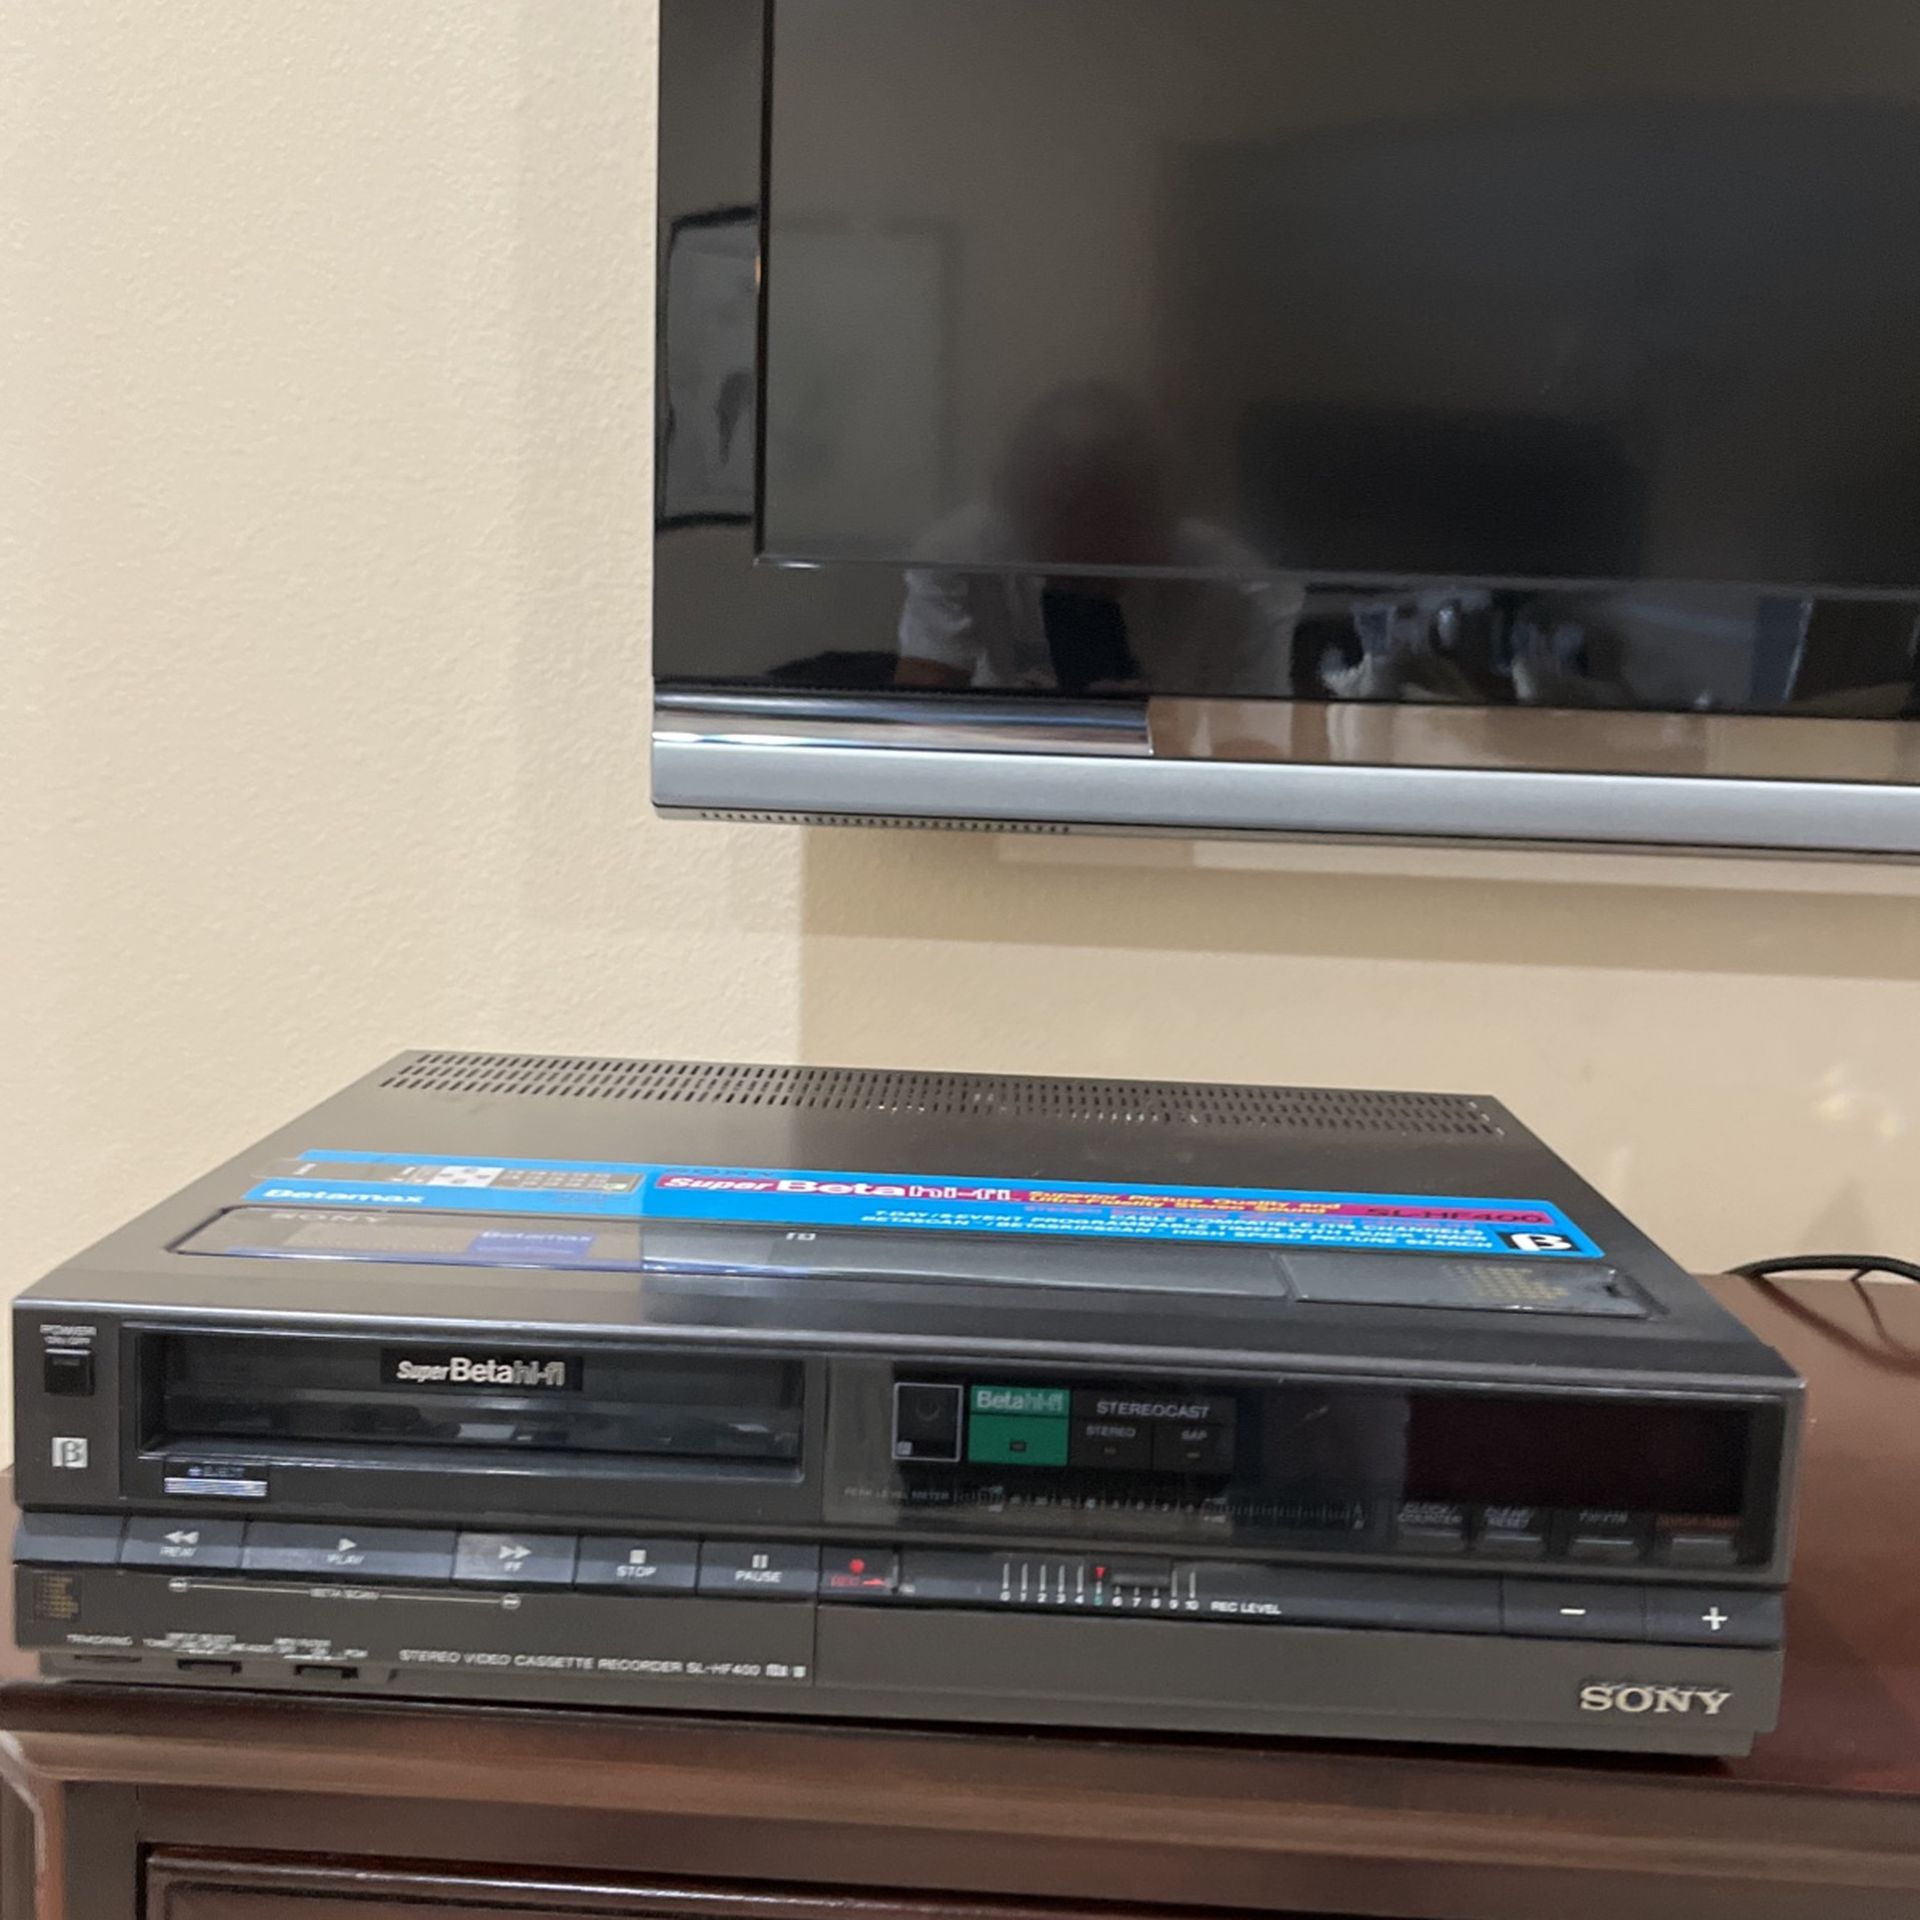 SONY SL-HF 400 Super Beta Hi-Fi VCR